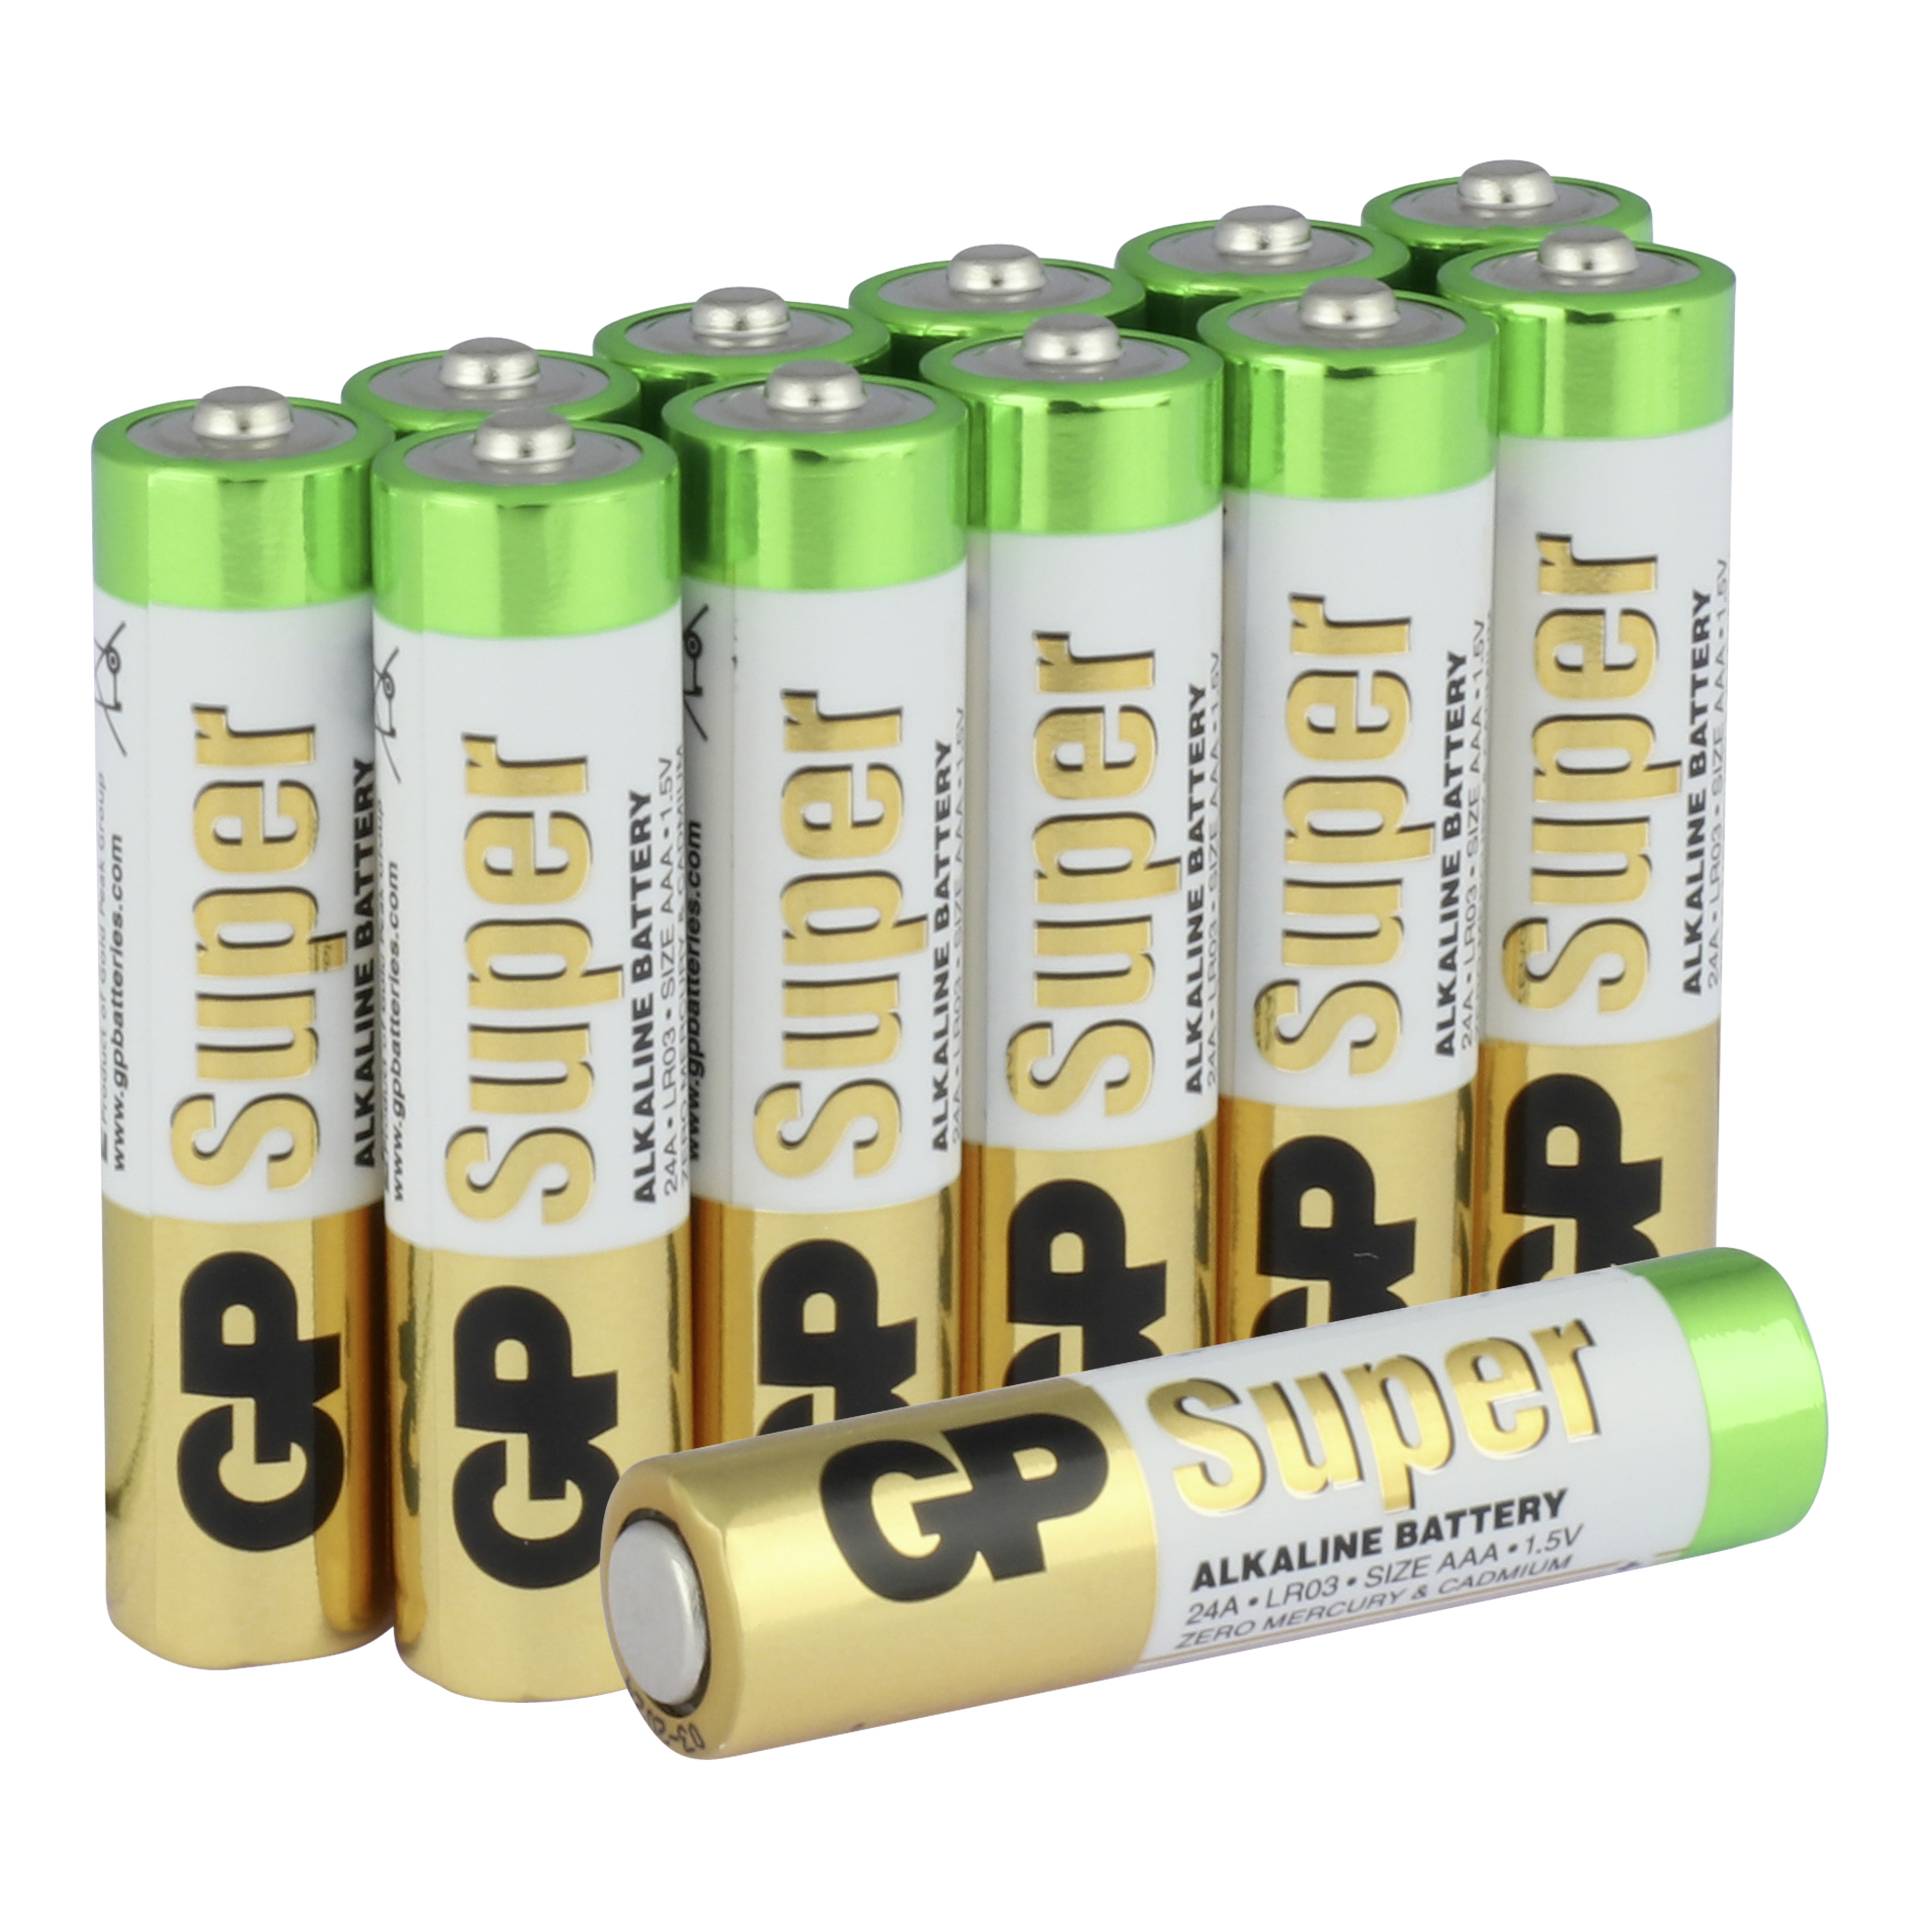 Aaa battery. Батарейка GP super Alkaline AAA. AAA батарейка GP super Alkaline 24a lr03. Alkaline Battery 1.5v lr03. Батарейки GP super 3+1.